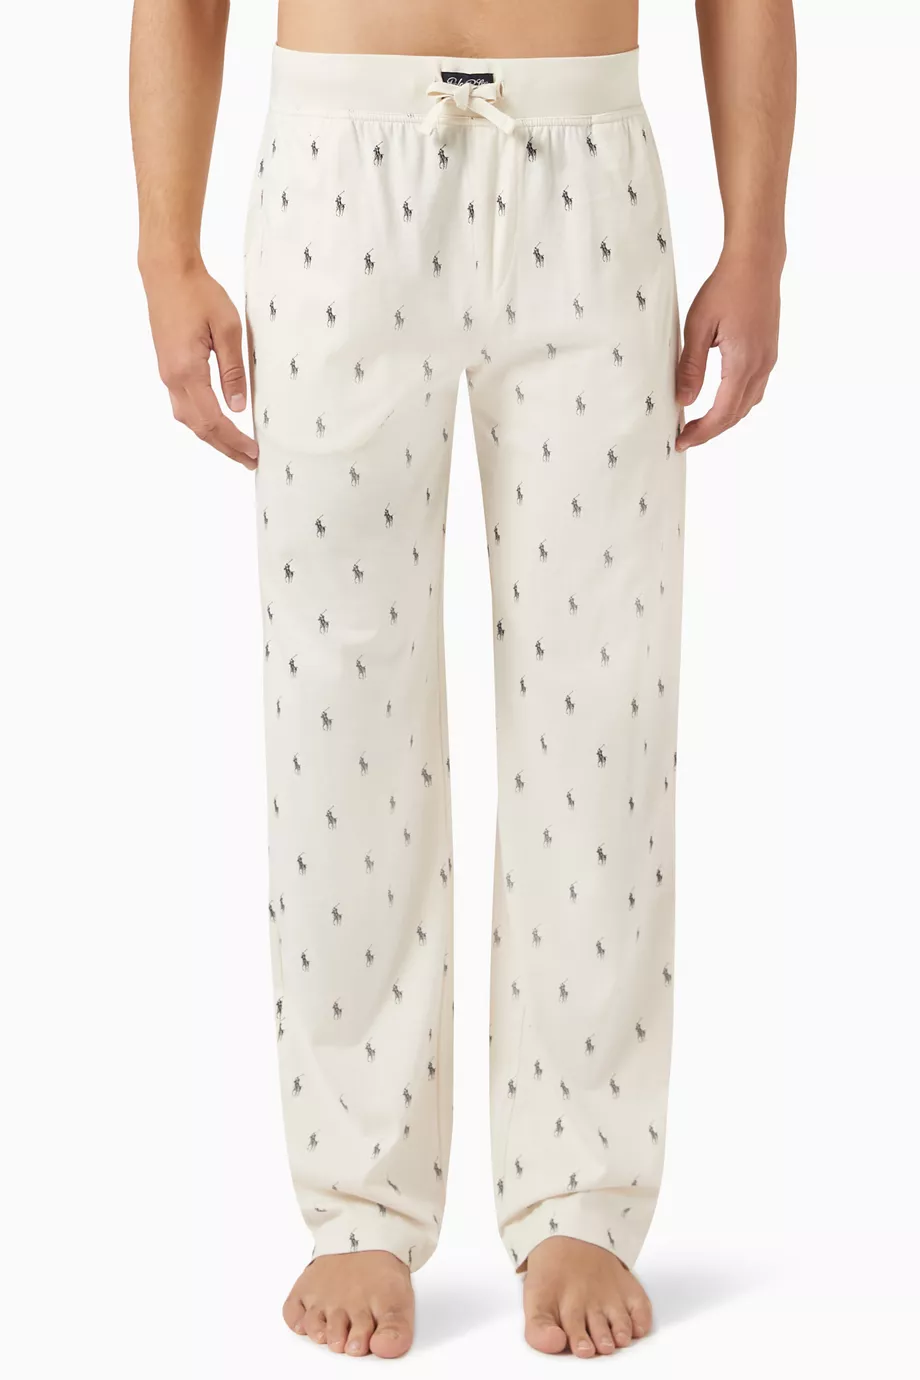 Shop Polo Ralph Lauren Neutral Sleep Pyjamas in Cotton for MEN | Ounass  Qatar